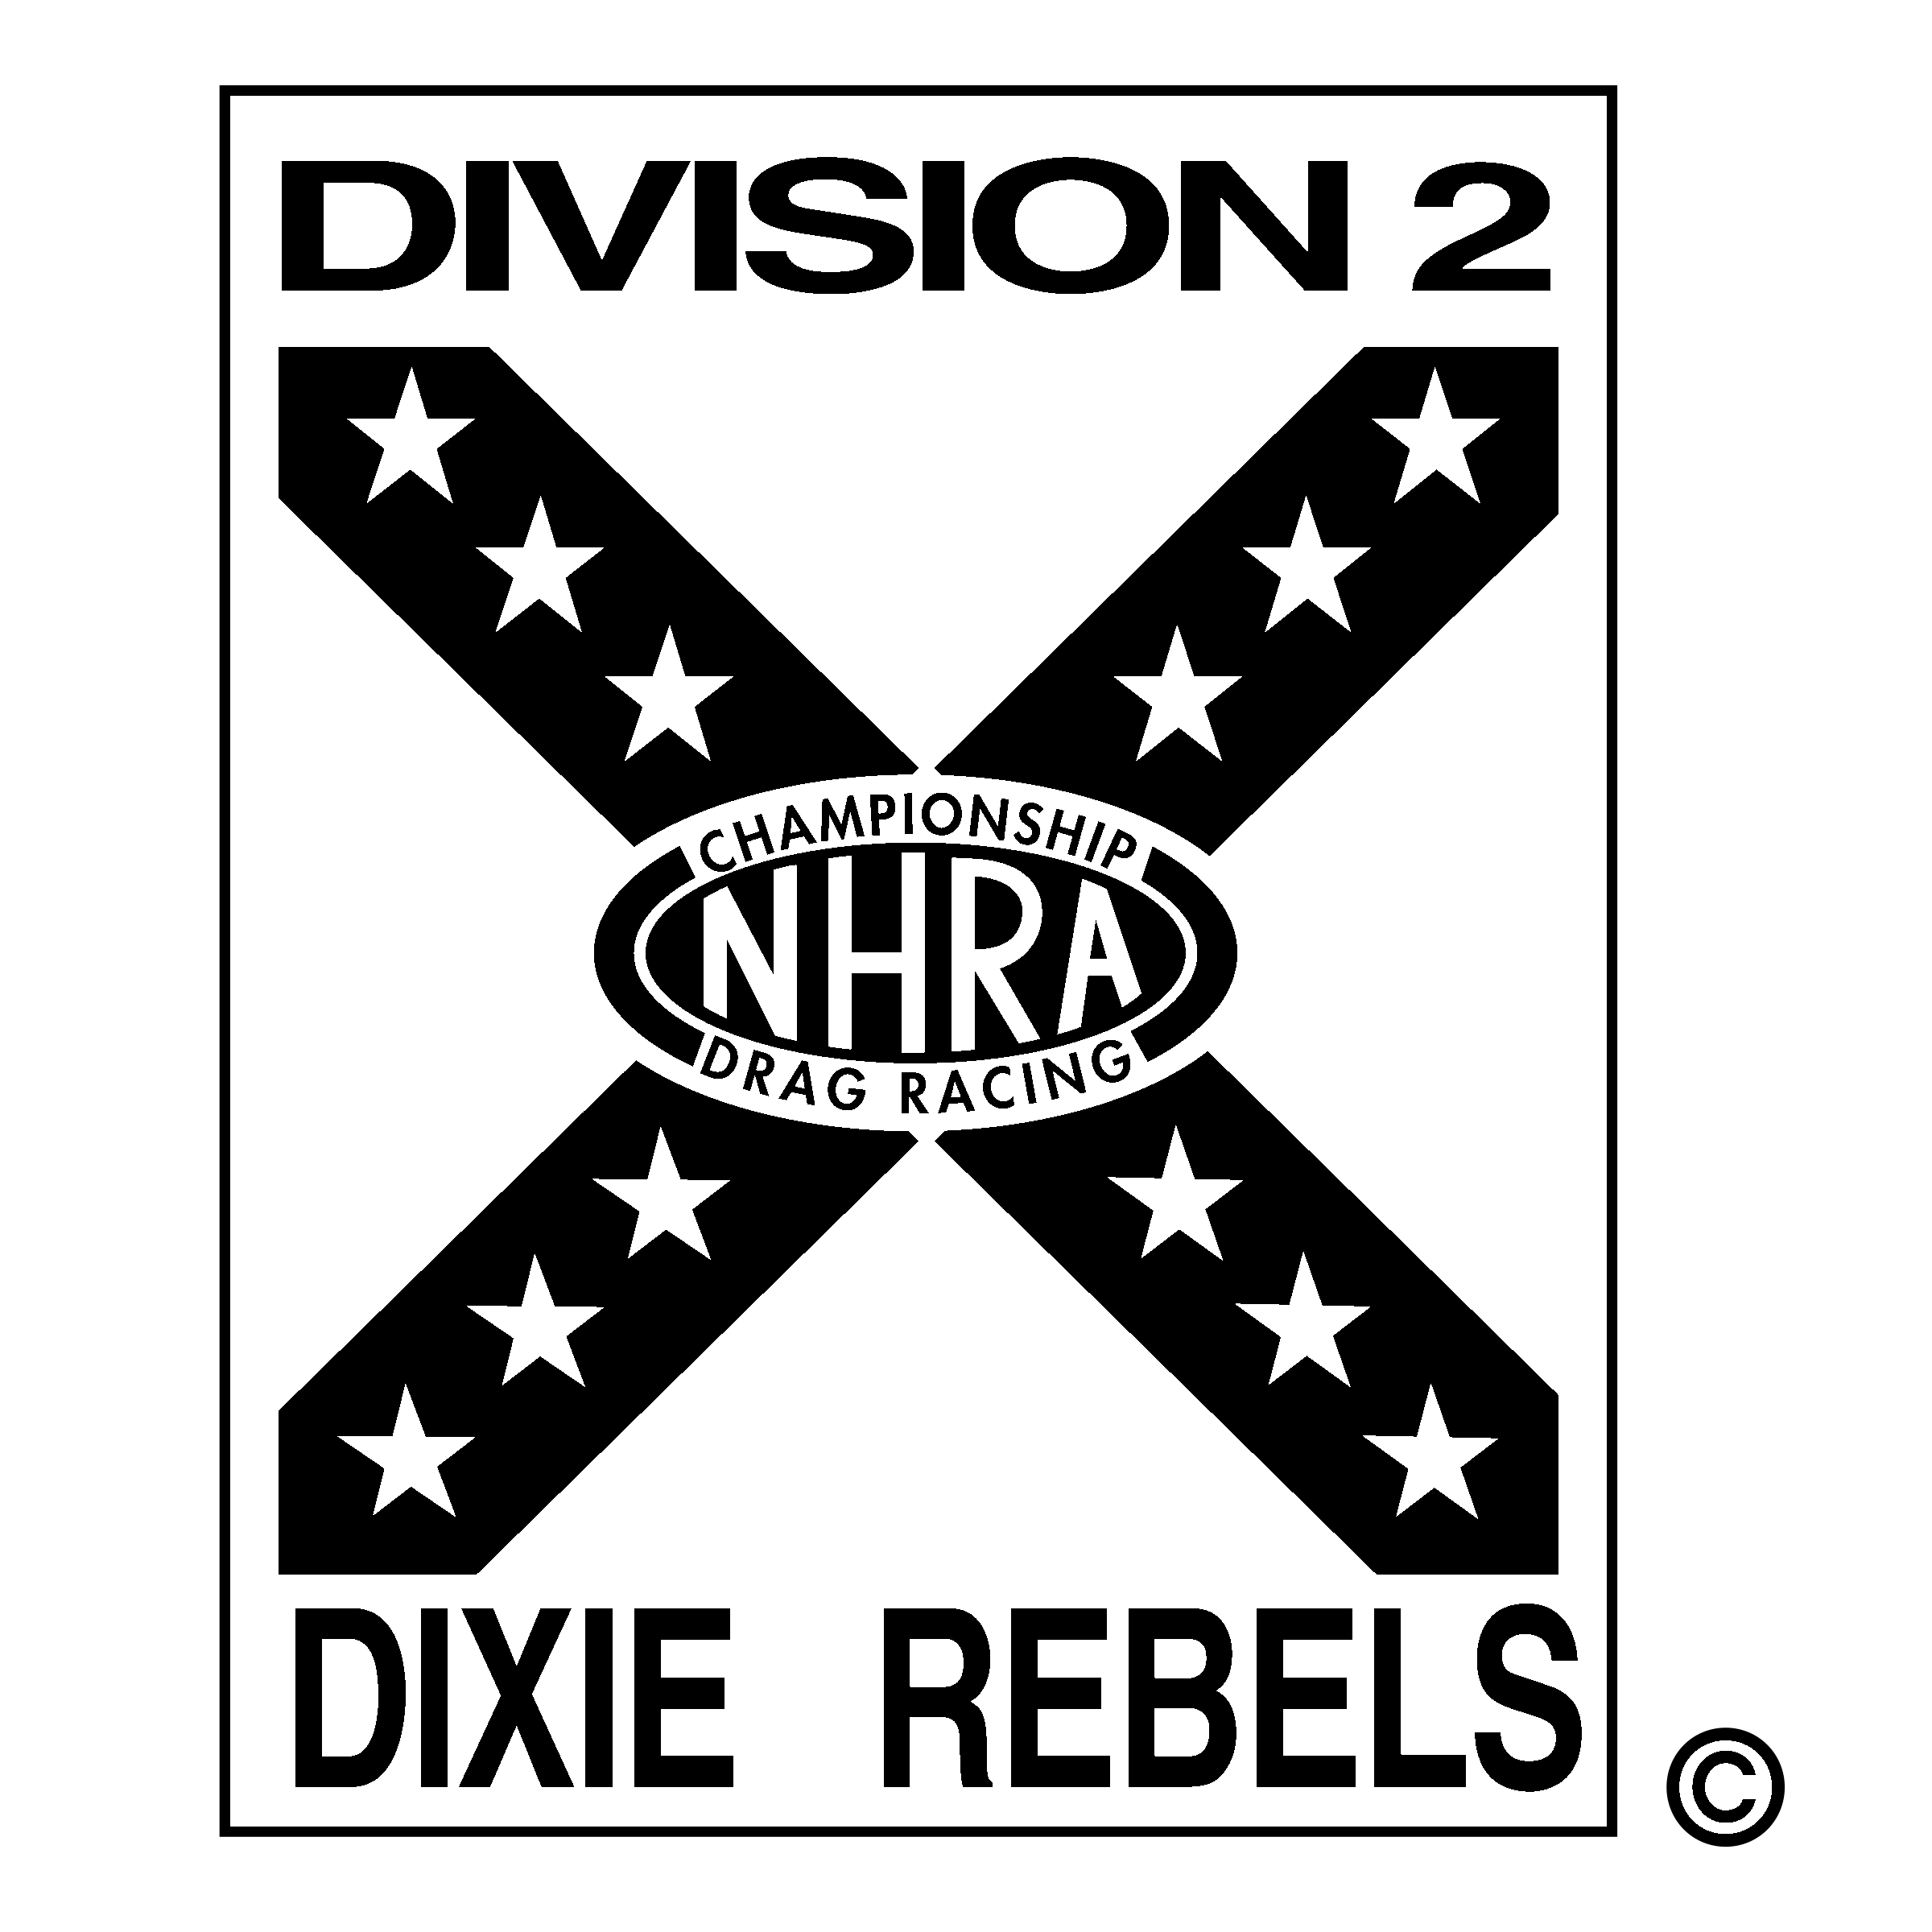 Black White Rebels Logo - Division 2 Dixie Rebels Logo PNG Transparent & SVG Vector - Freebie ...